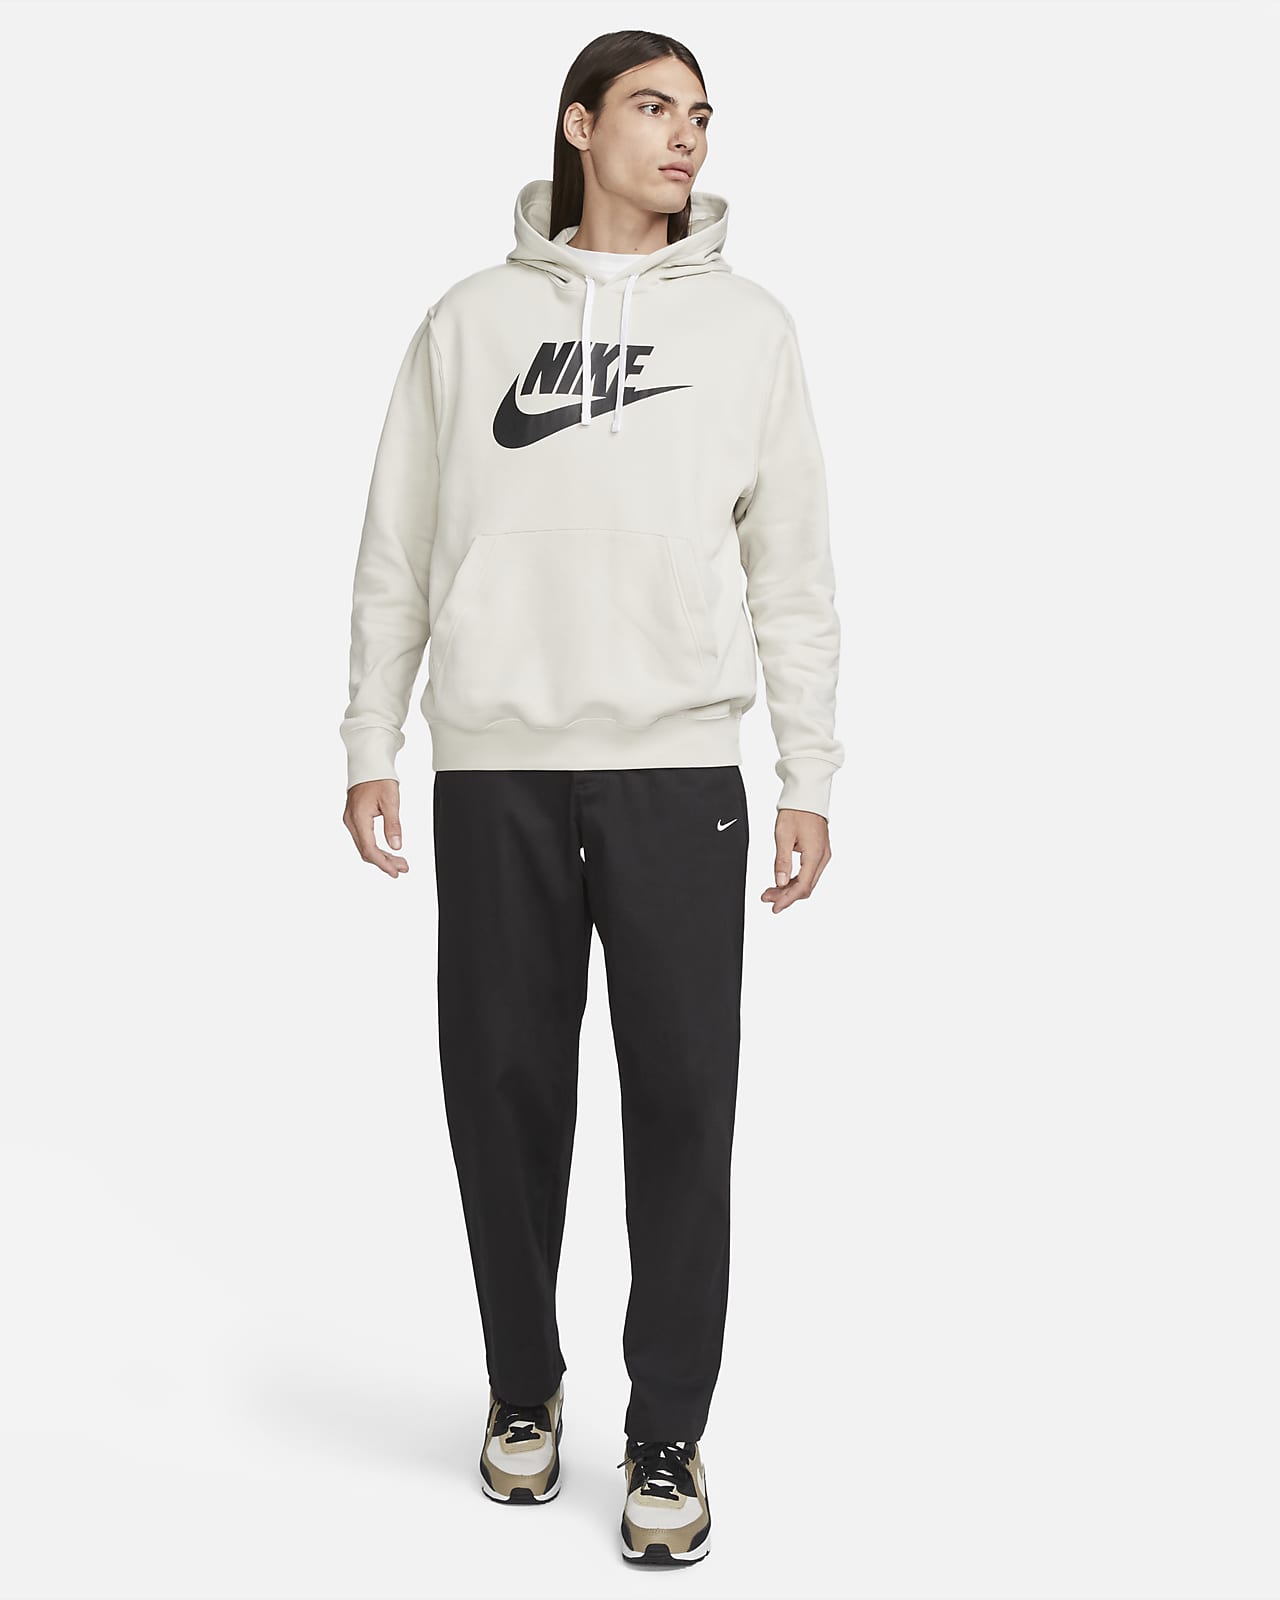 Sudadera con gorro sin cierre con estampado hombre Nike Sportswear Nike.com